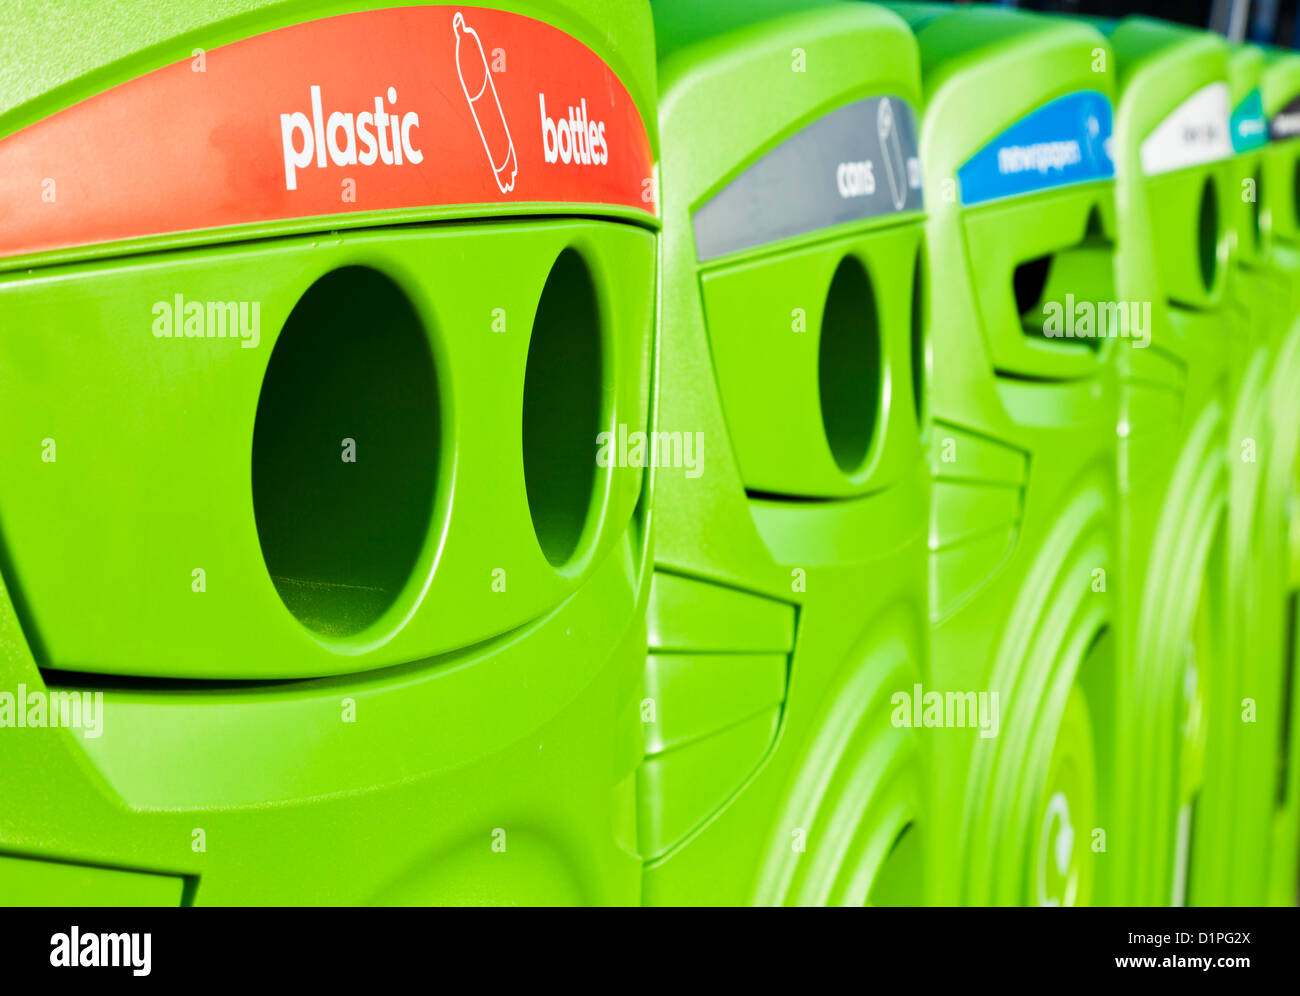 Bacs de recyclage vert brillant dans une ligne dans un centre-ville Angleterre UK GB EU Europe Banque D'Images